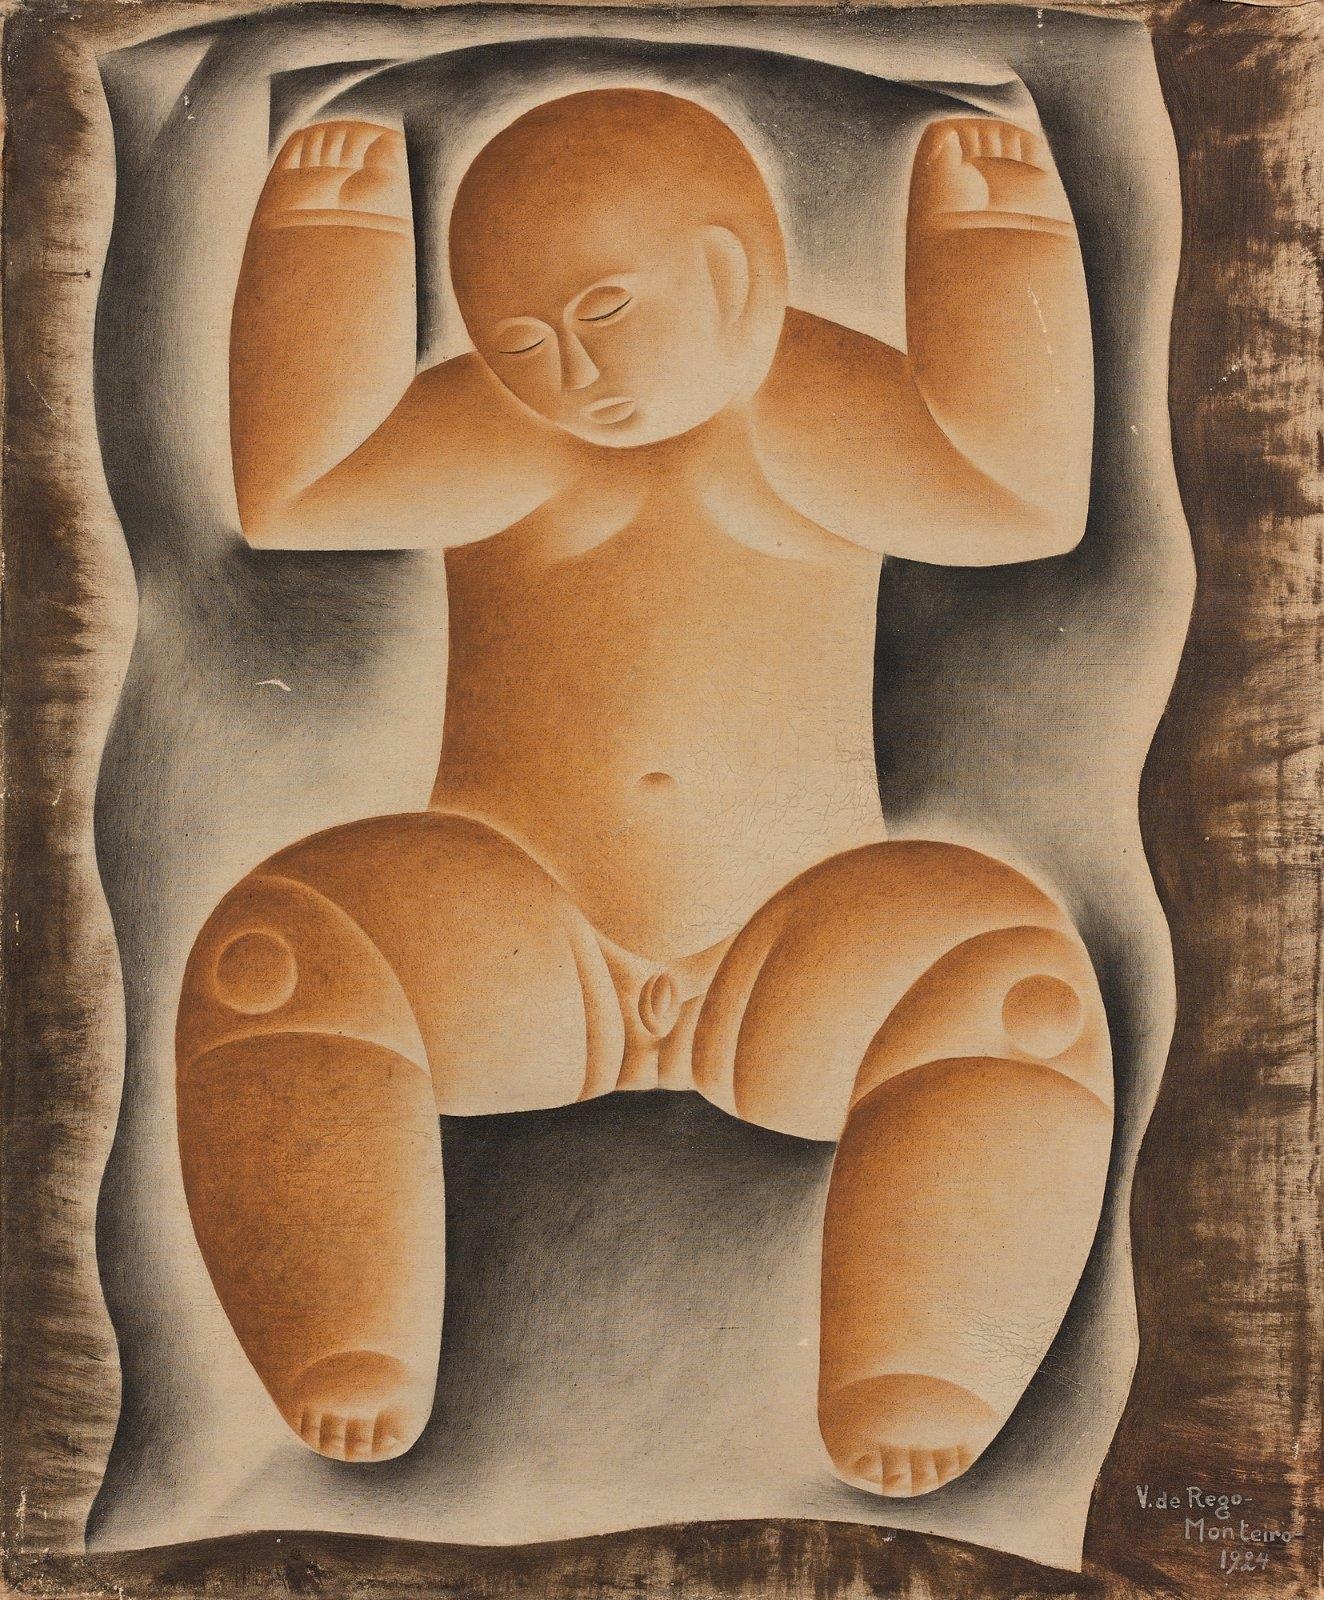 Enfant by Vicente Do Rego Monteiro, 1924